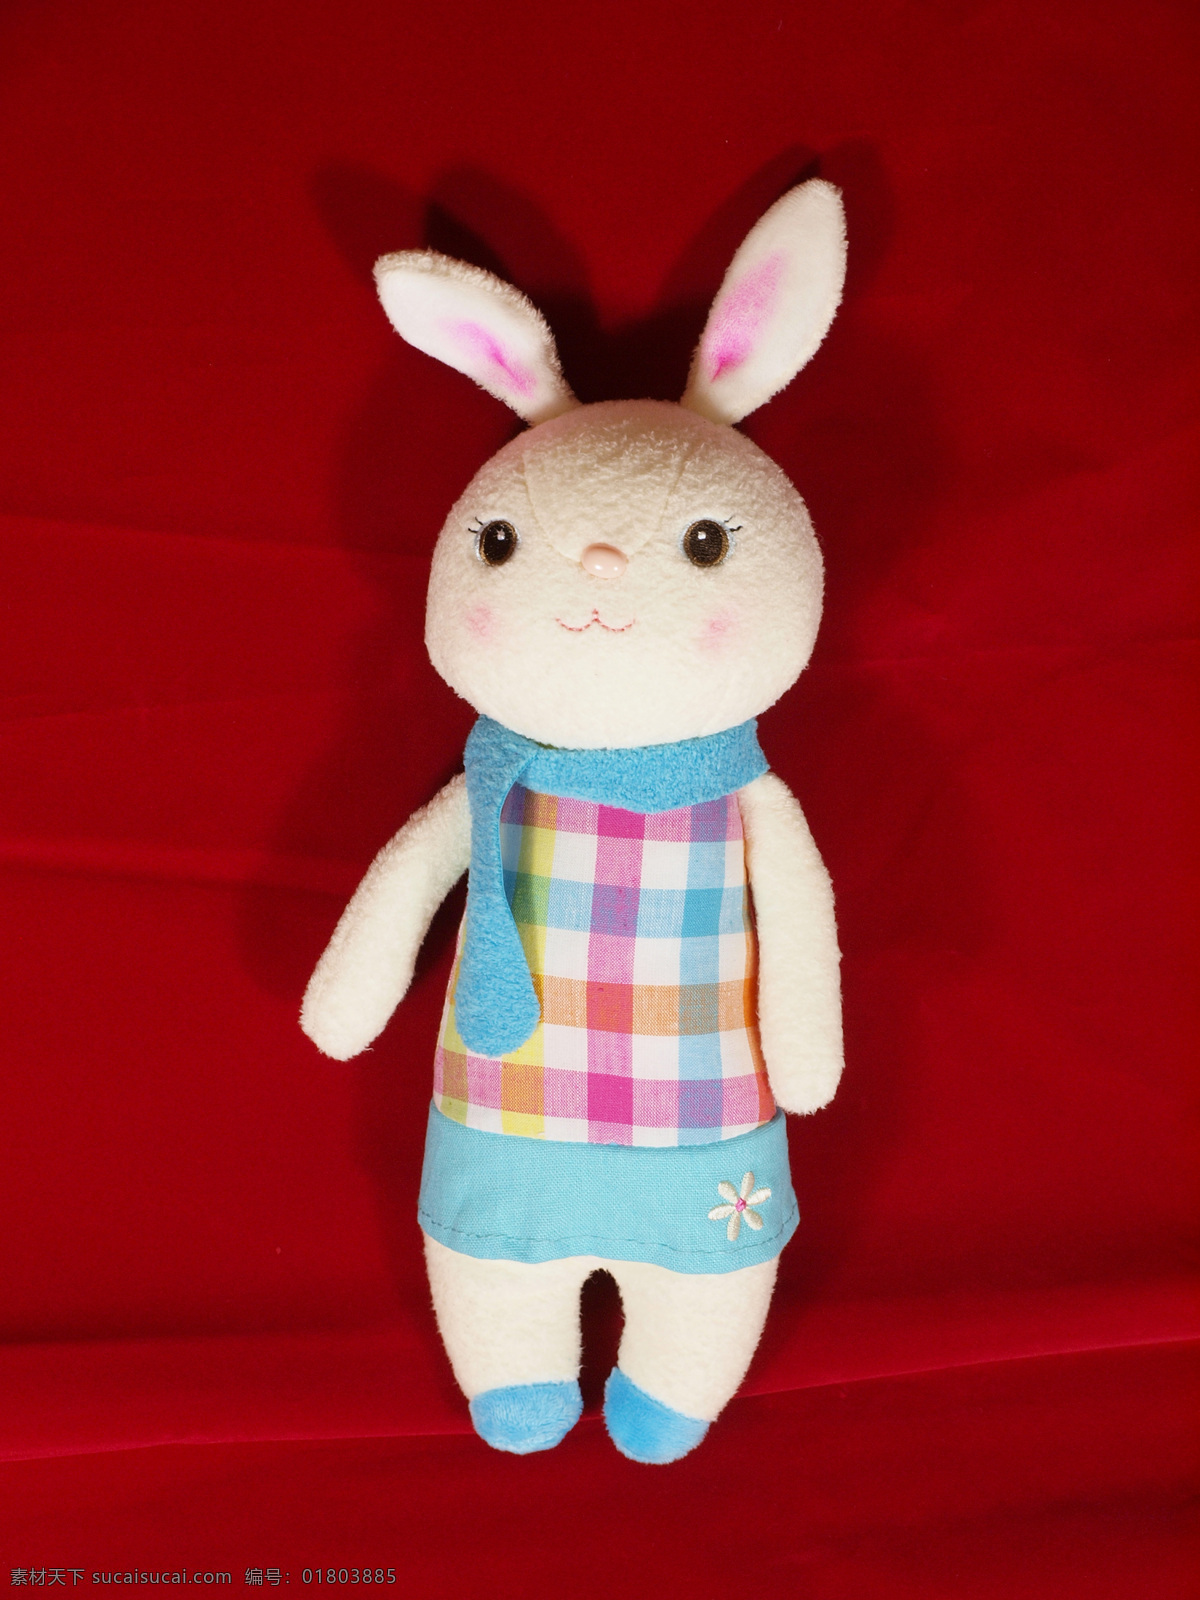 布偶 布娃娃 动物 可爱 生活百科 生活素材 兔子 玩具 兔 玩具兔 小动物 玩偶 psd源文件